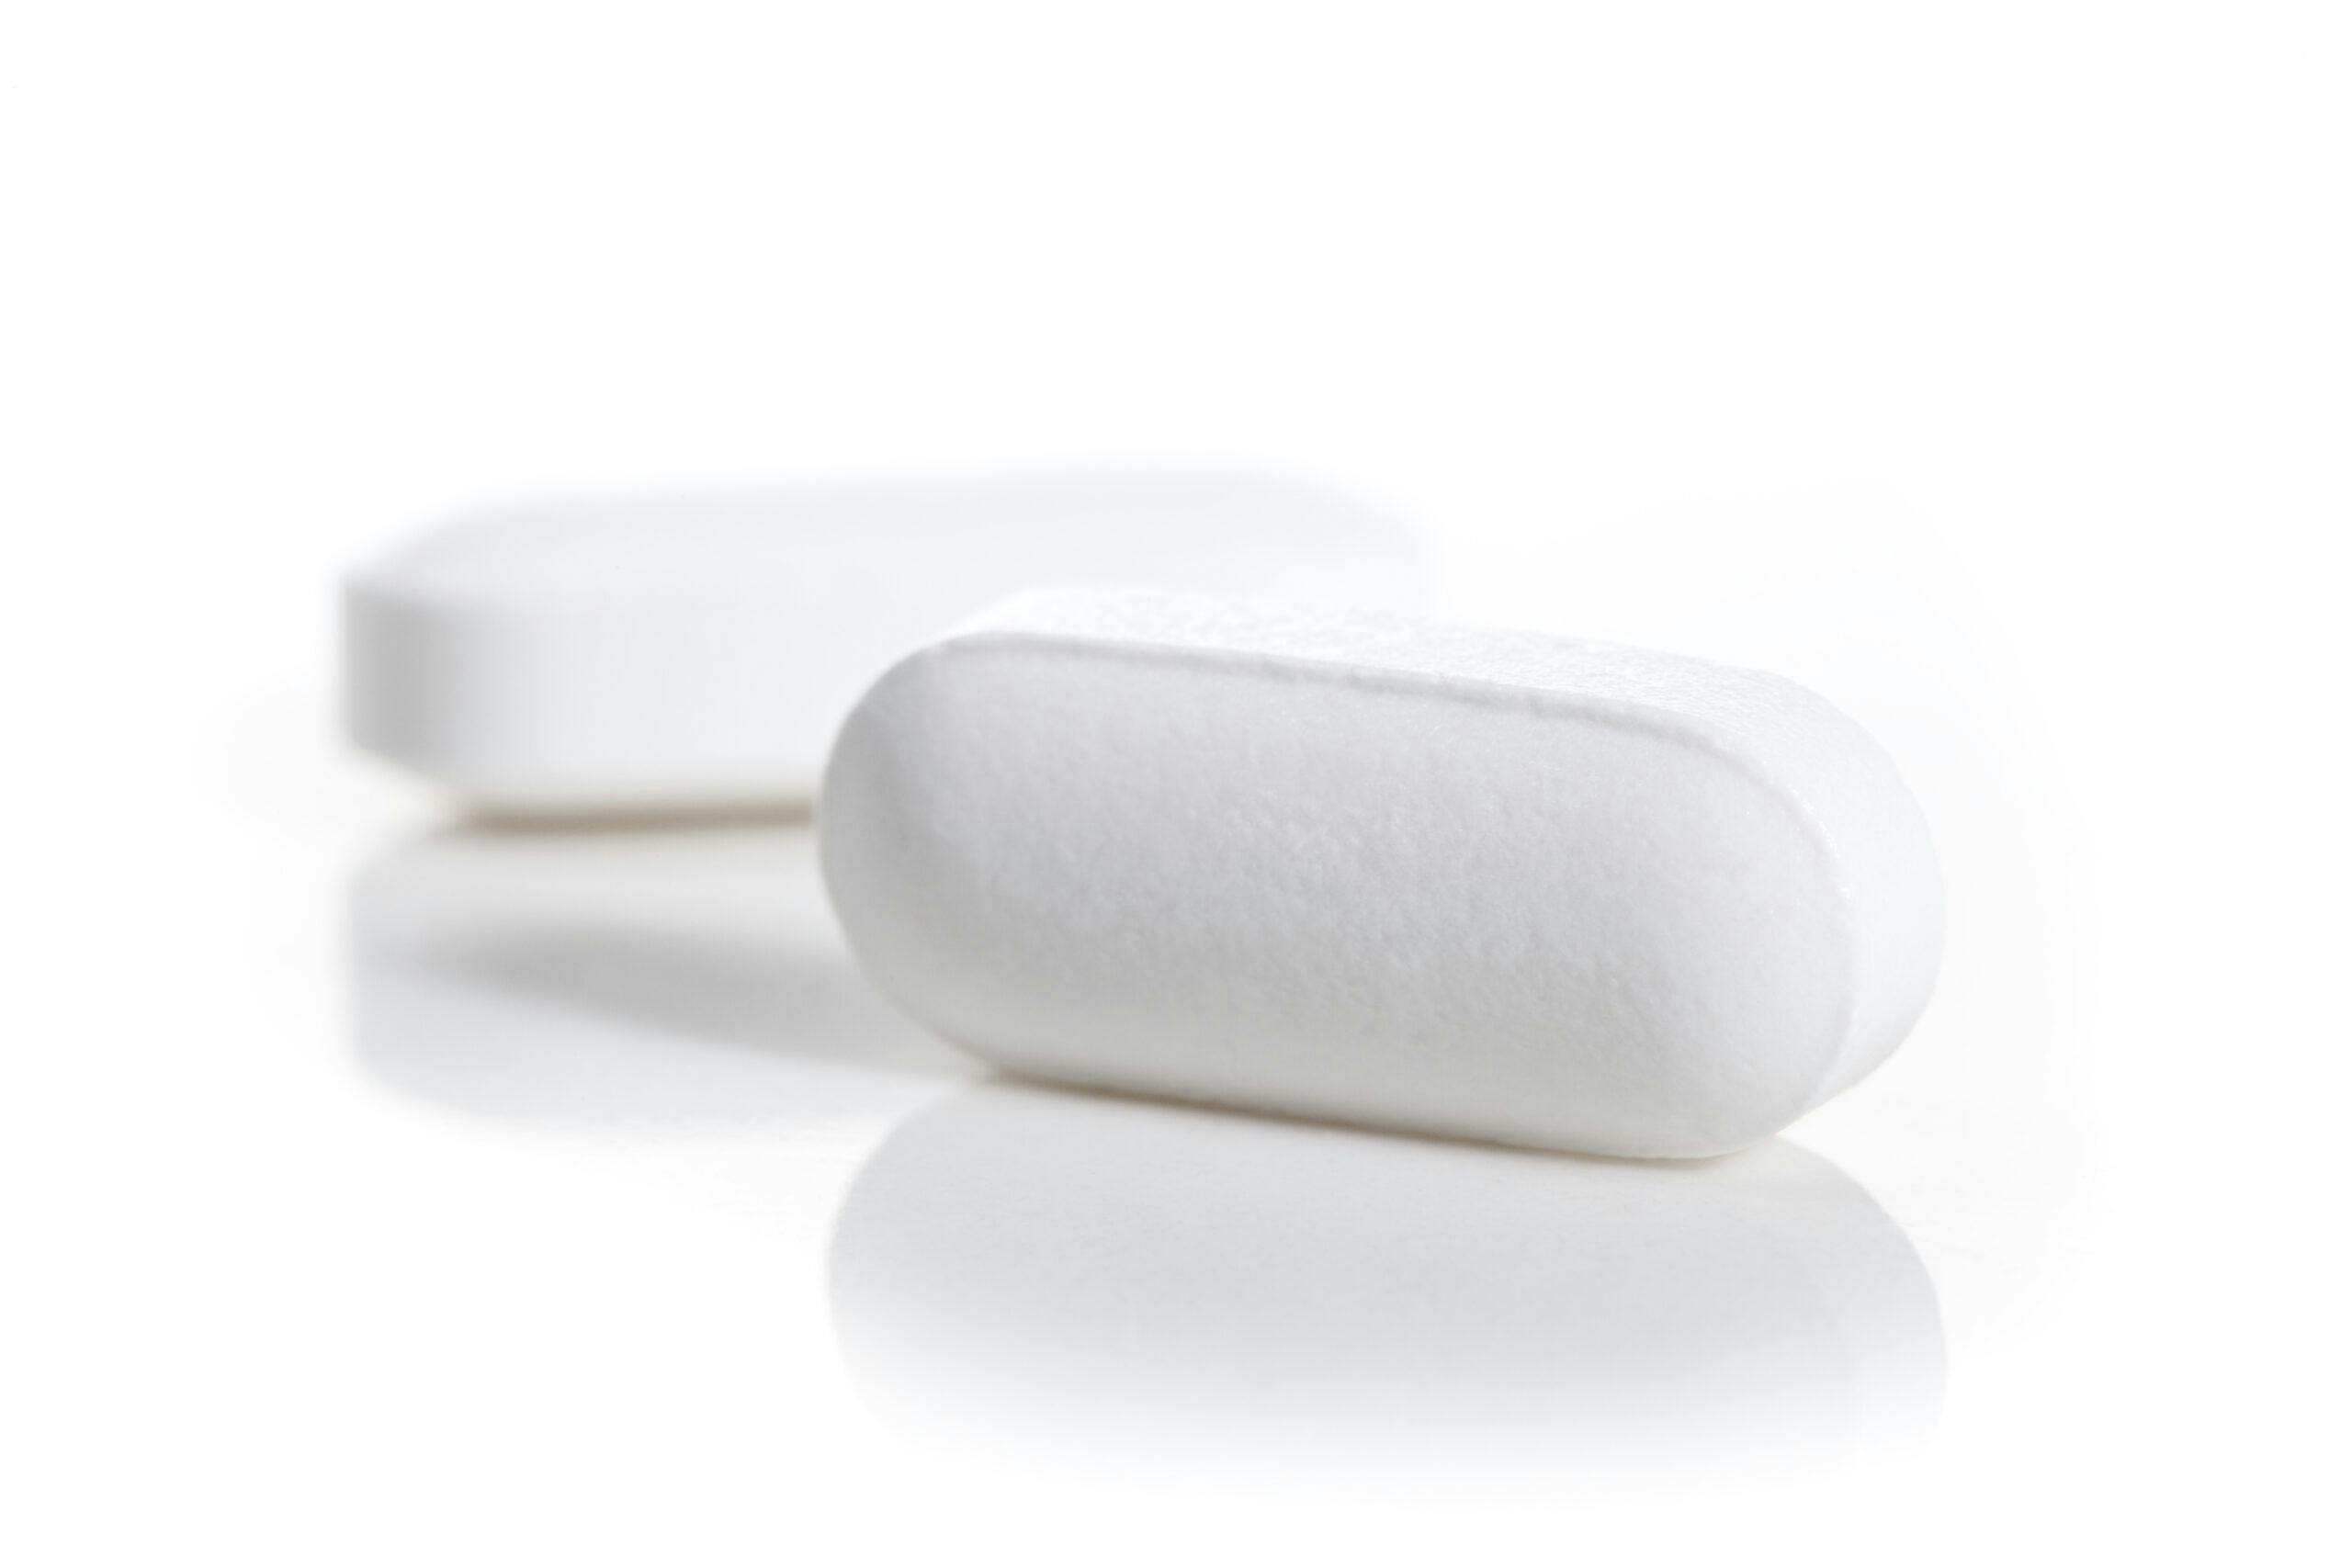 white oblong pills